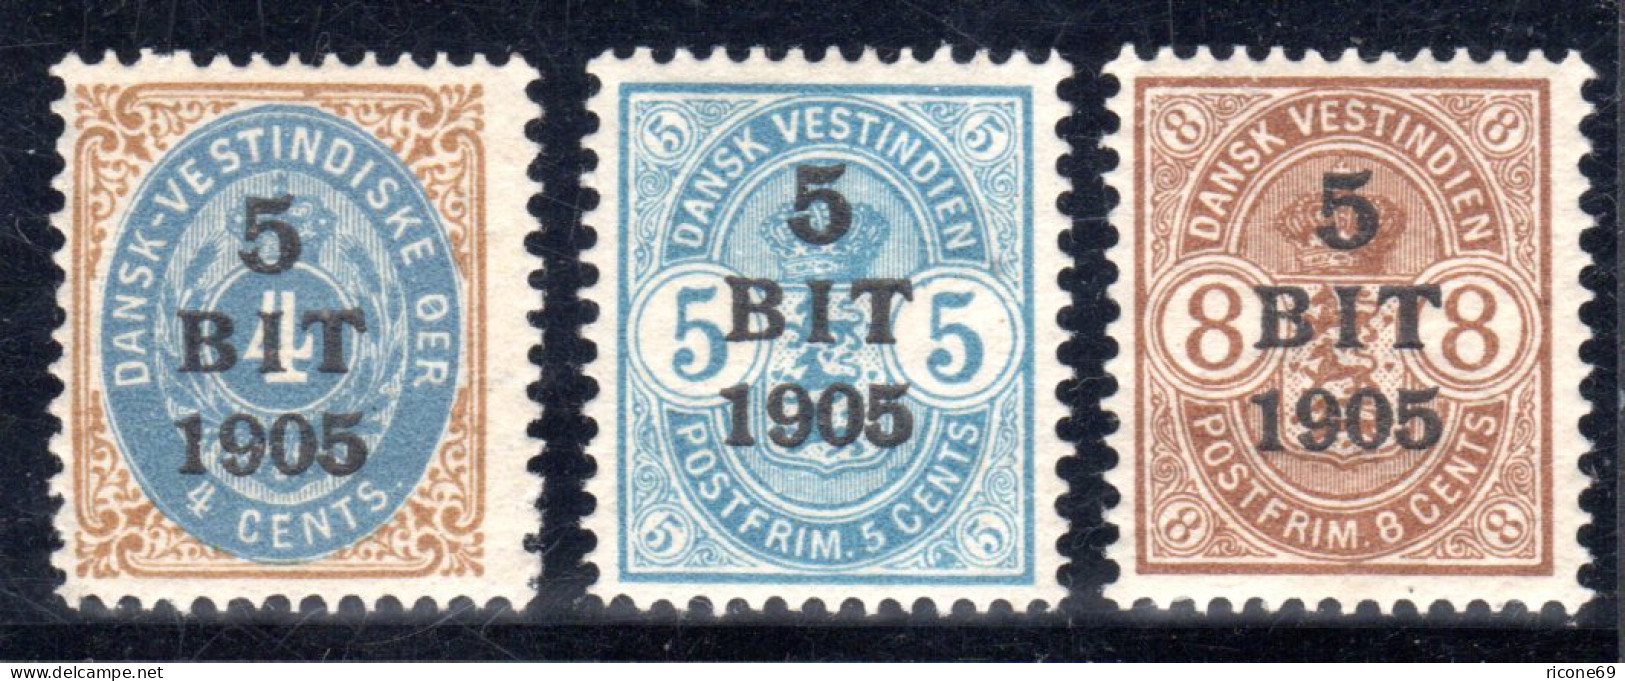 Dänisch Westindien, DWI, Kpl. Postfrische Ausgabe V. 3 Überdruckwerten 1905.  - Antillas Holandesas